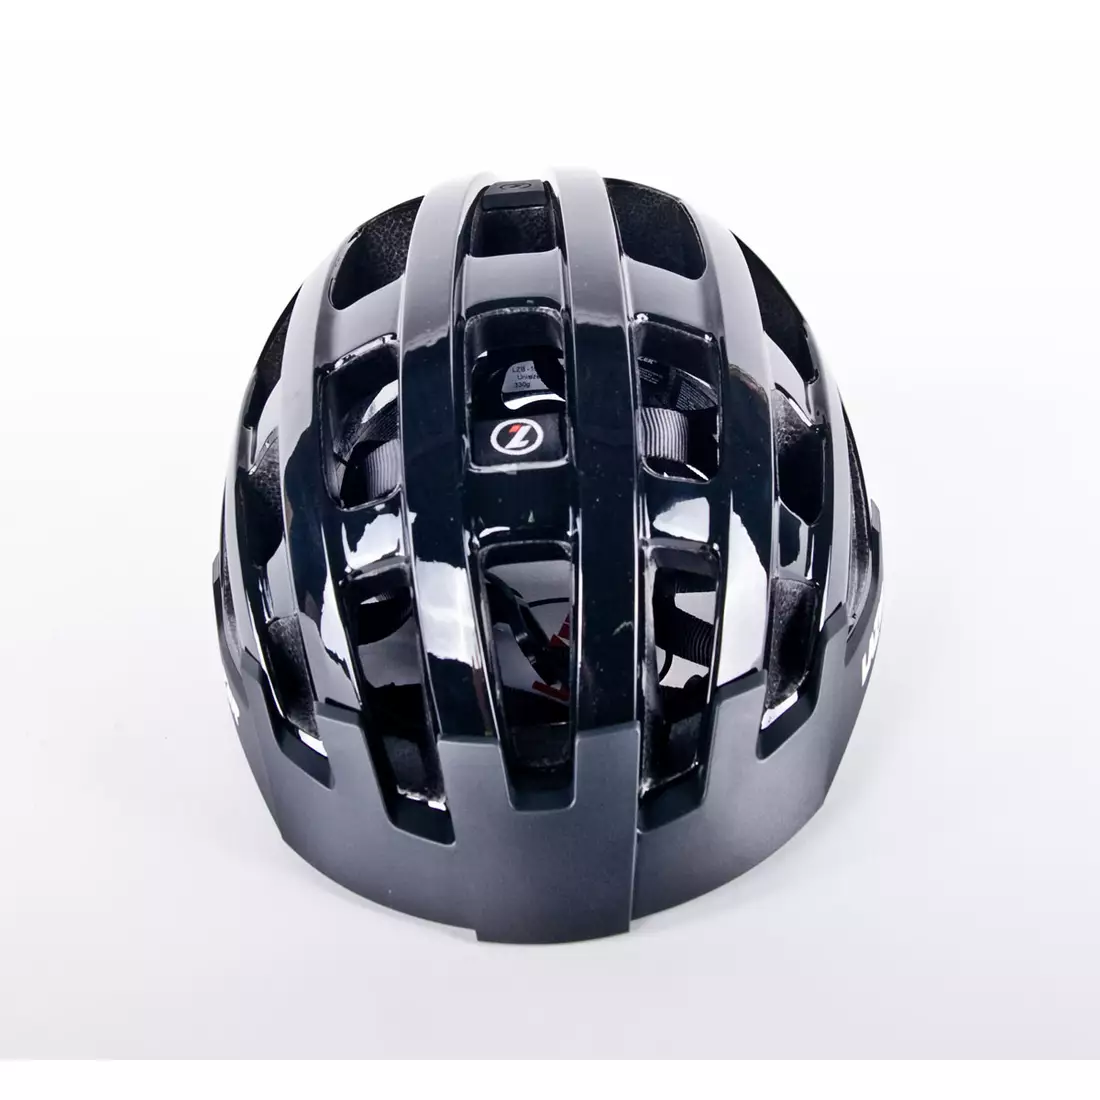 LAZER Compact cască de bicicletă negru lucios